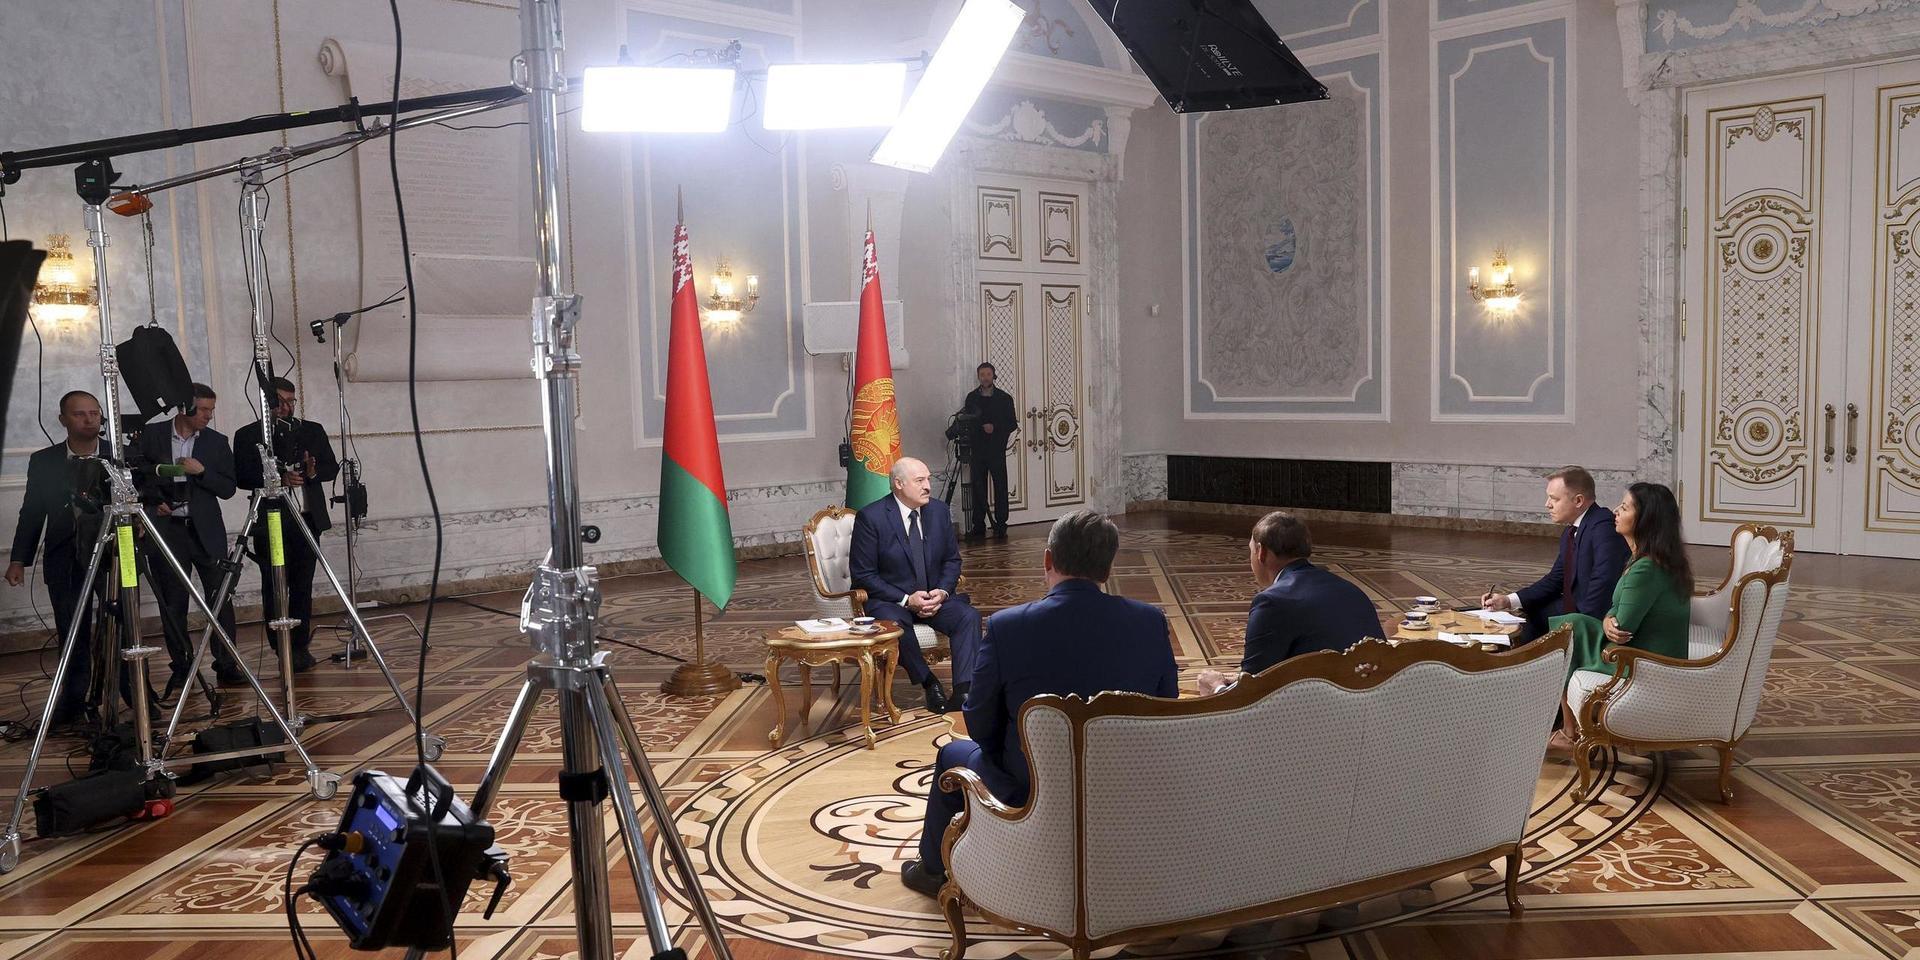 Belarus ledare Aleksandr Lukasjenko intervjuas av ryska journalister i Minsk i tisdags. Bland dem chefredaktörerna för flera av Rysslands statligt styrda medieorgan.